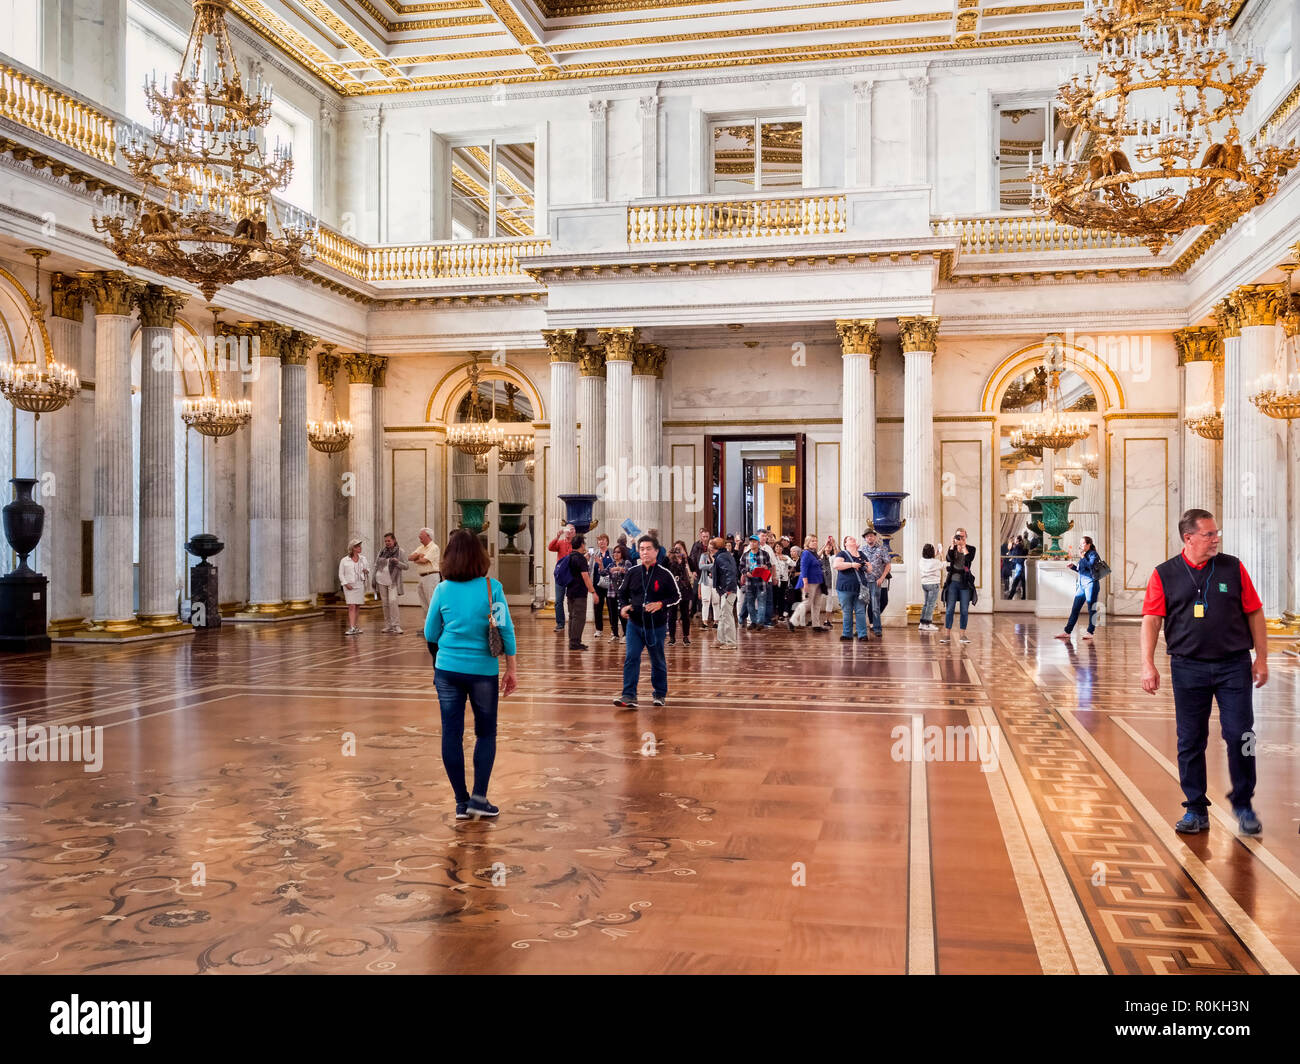 19. September 2018: In St. Petersburg, Russland - Besucher in St. George's Hall, oder den großen Thronsaal, im Winter Palace, Teil der Eremitage. Stockfoto